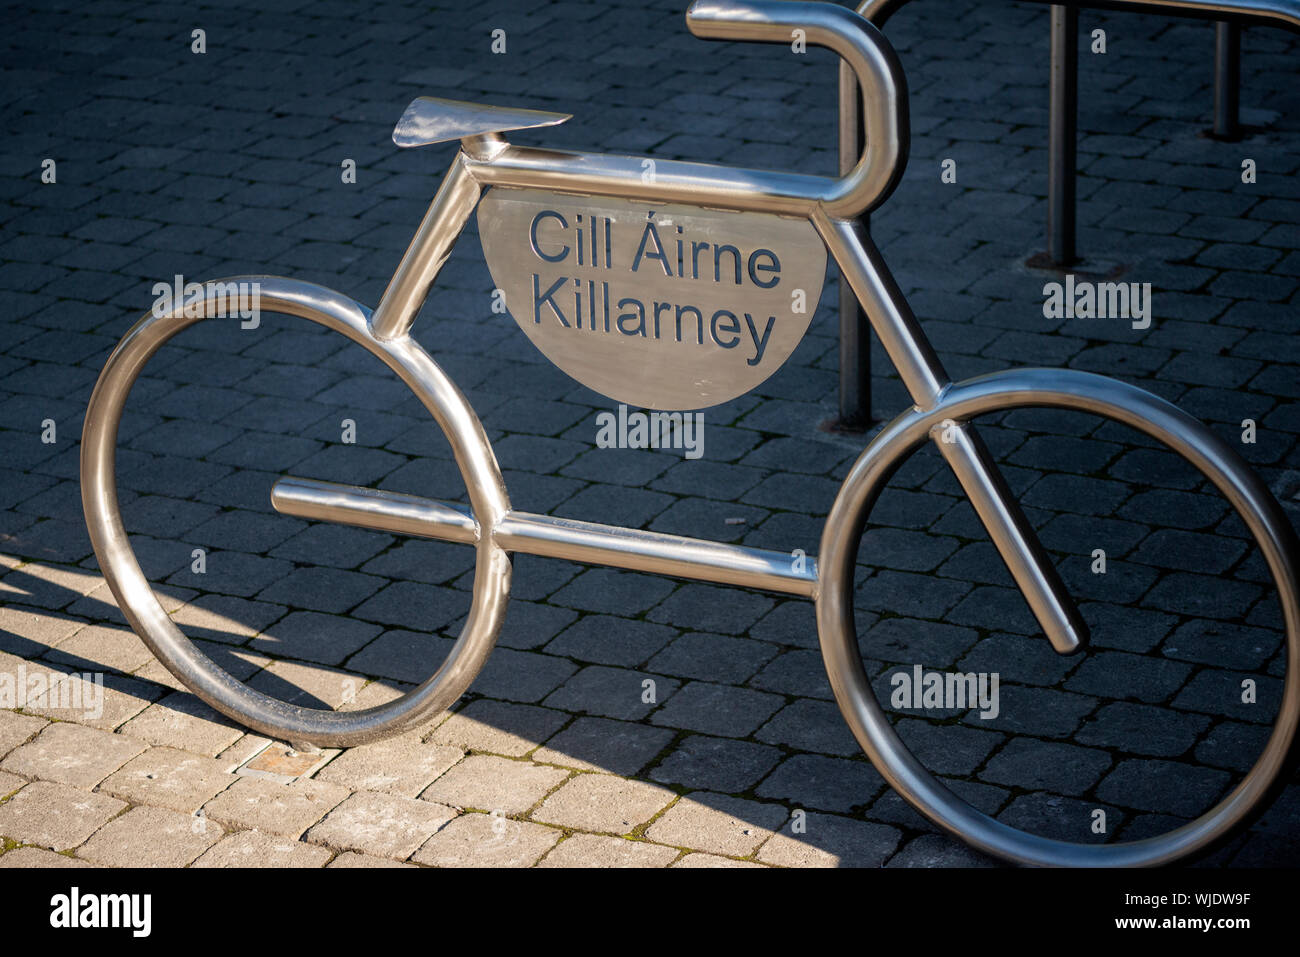 Innovativer Killarney oder Cill Airne eisenverchromter Fahrradparkplatz oder Fahrradträger in Form eines Fahrrads als Detail der städtischen Infrastruktur. Stockfoto